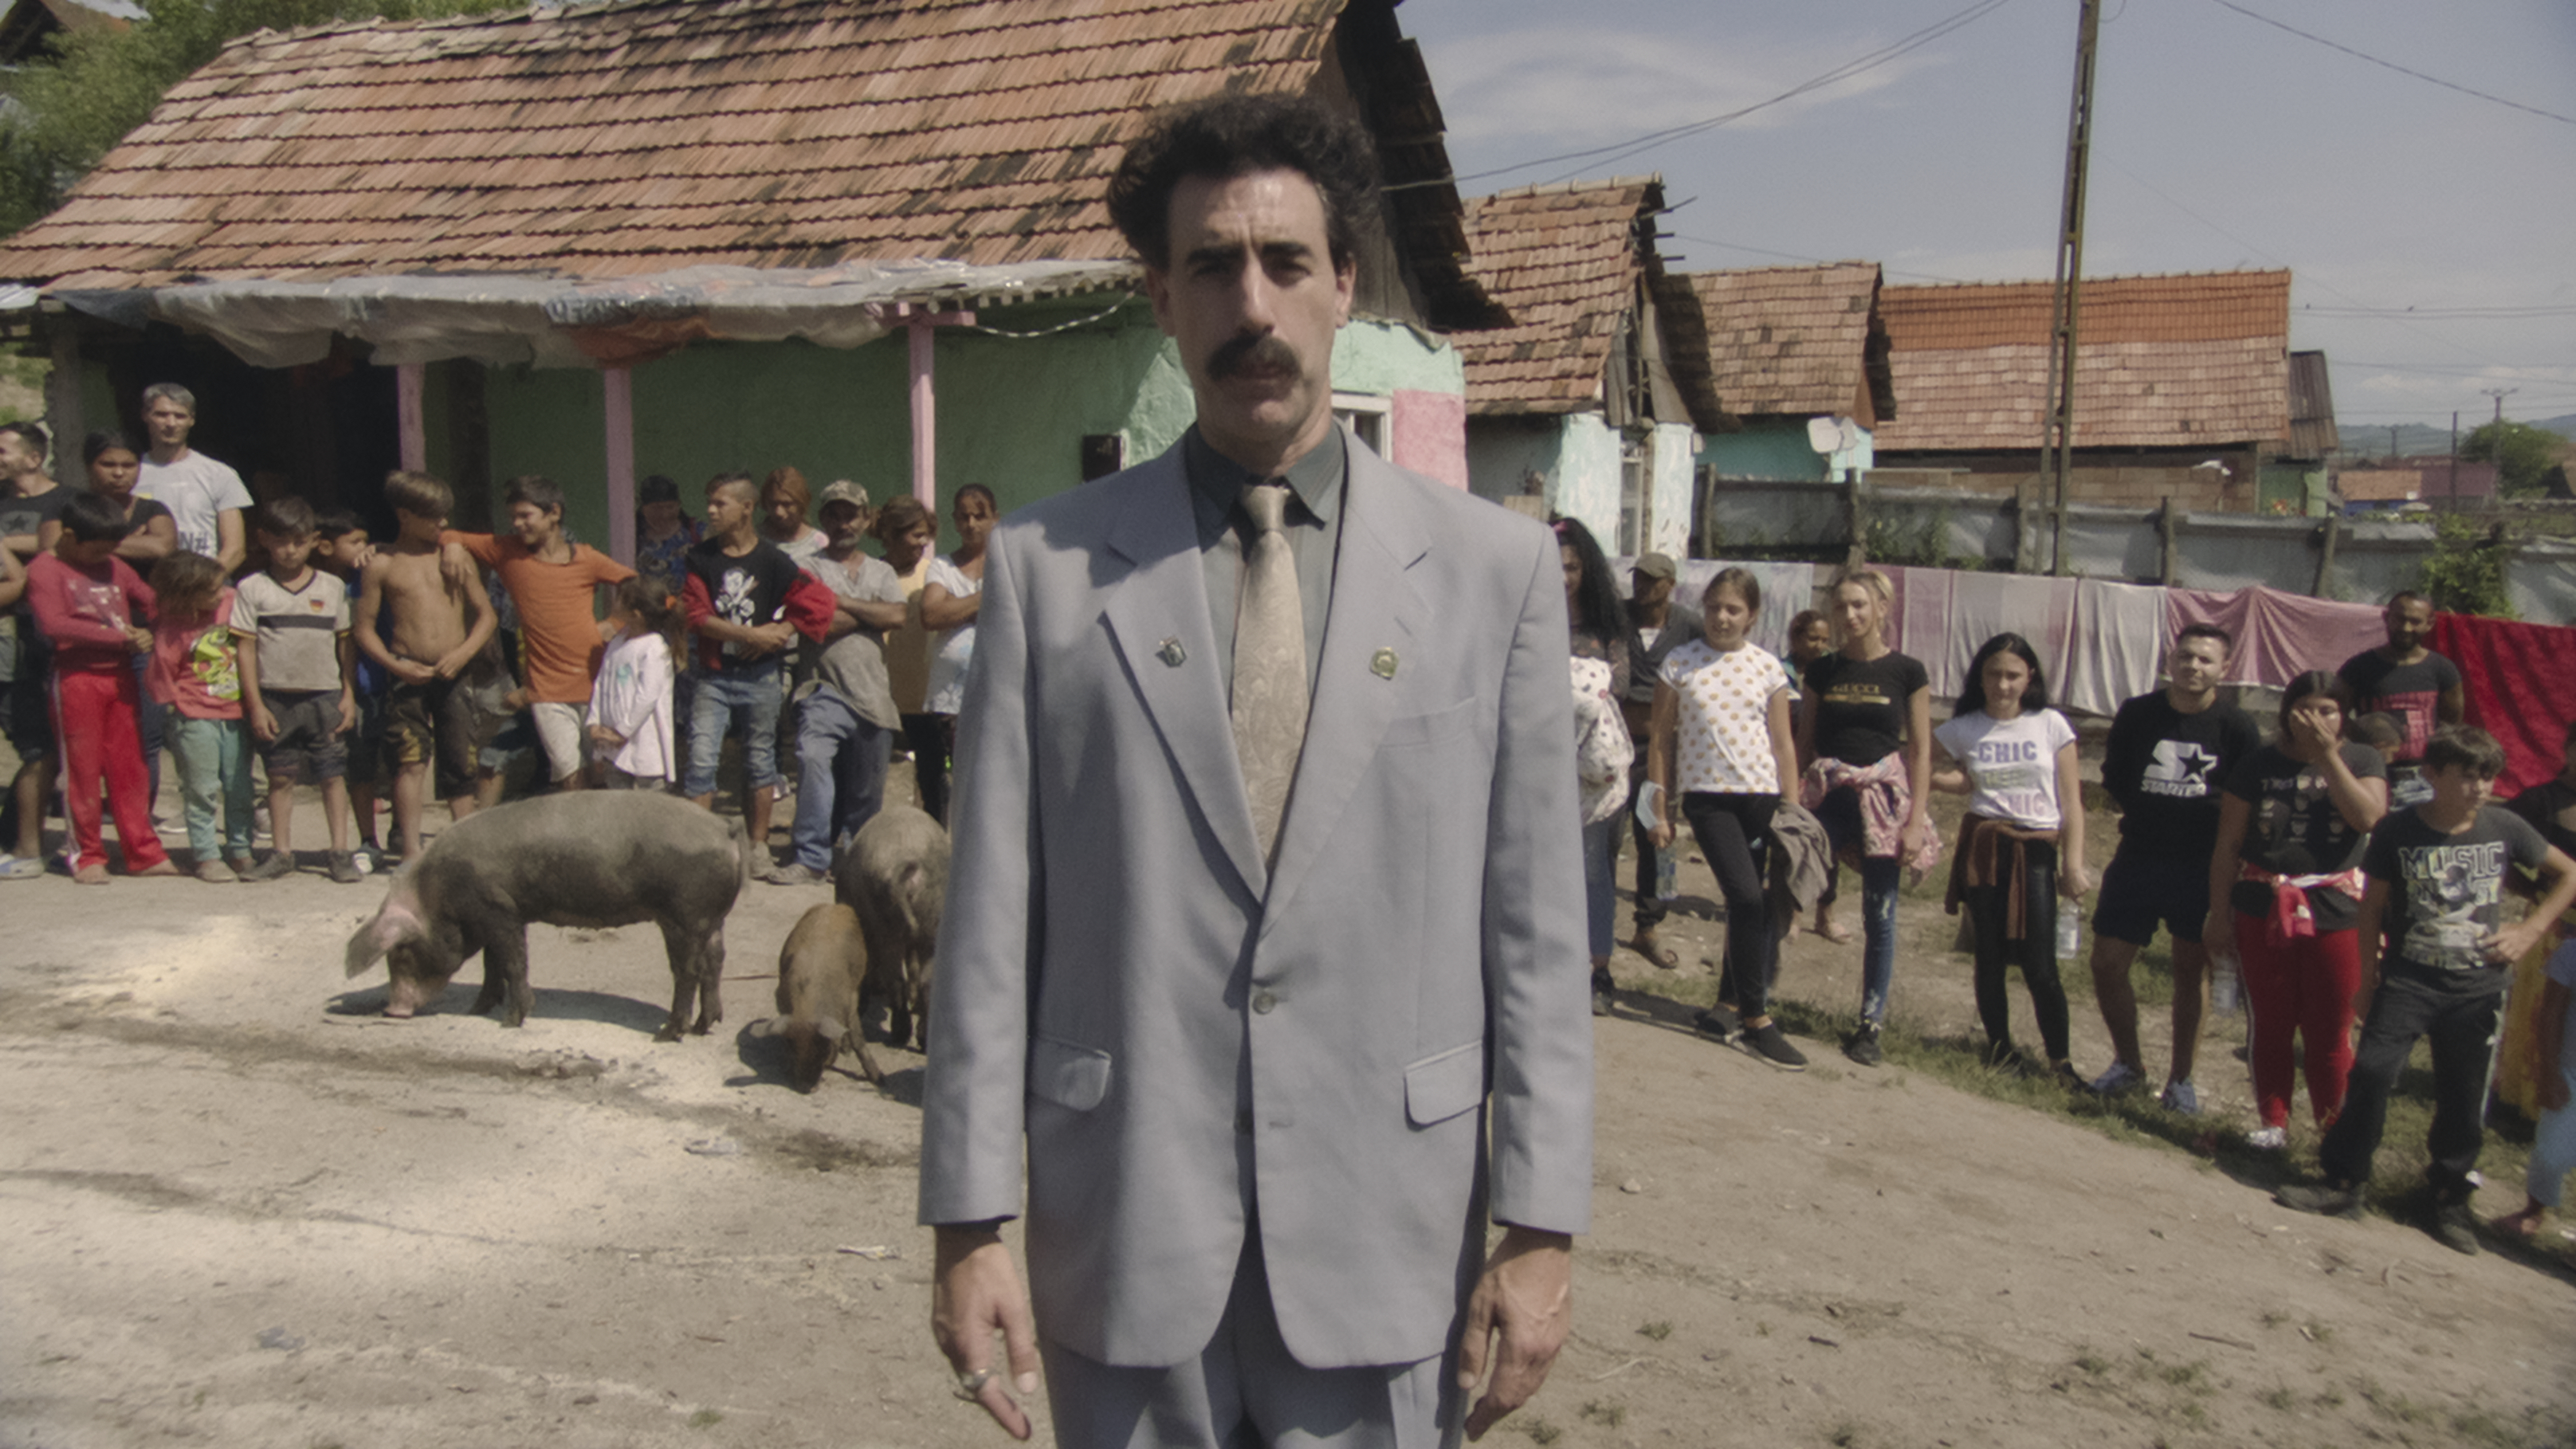 Borat Subsequent Moviefilm / Borat Subsequent Moviefilm (2020)